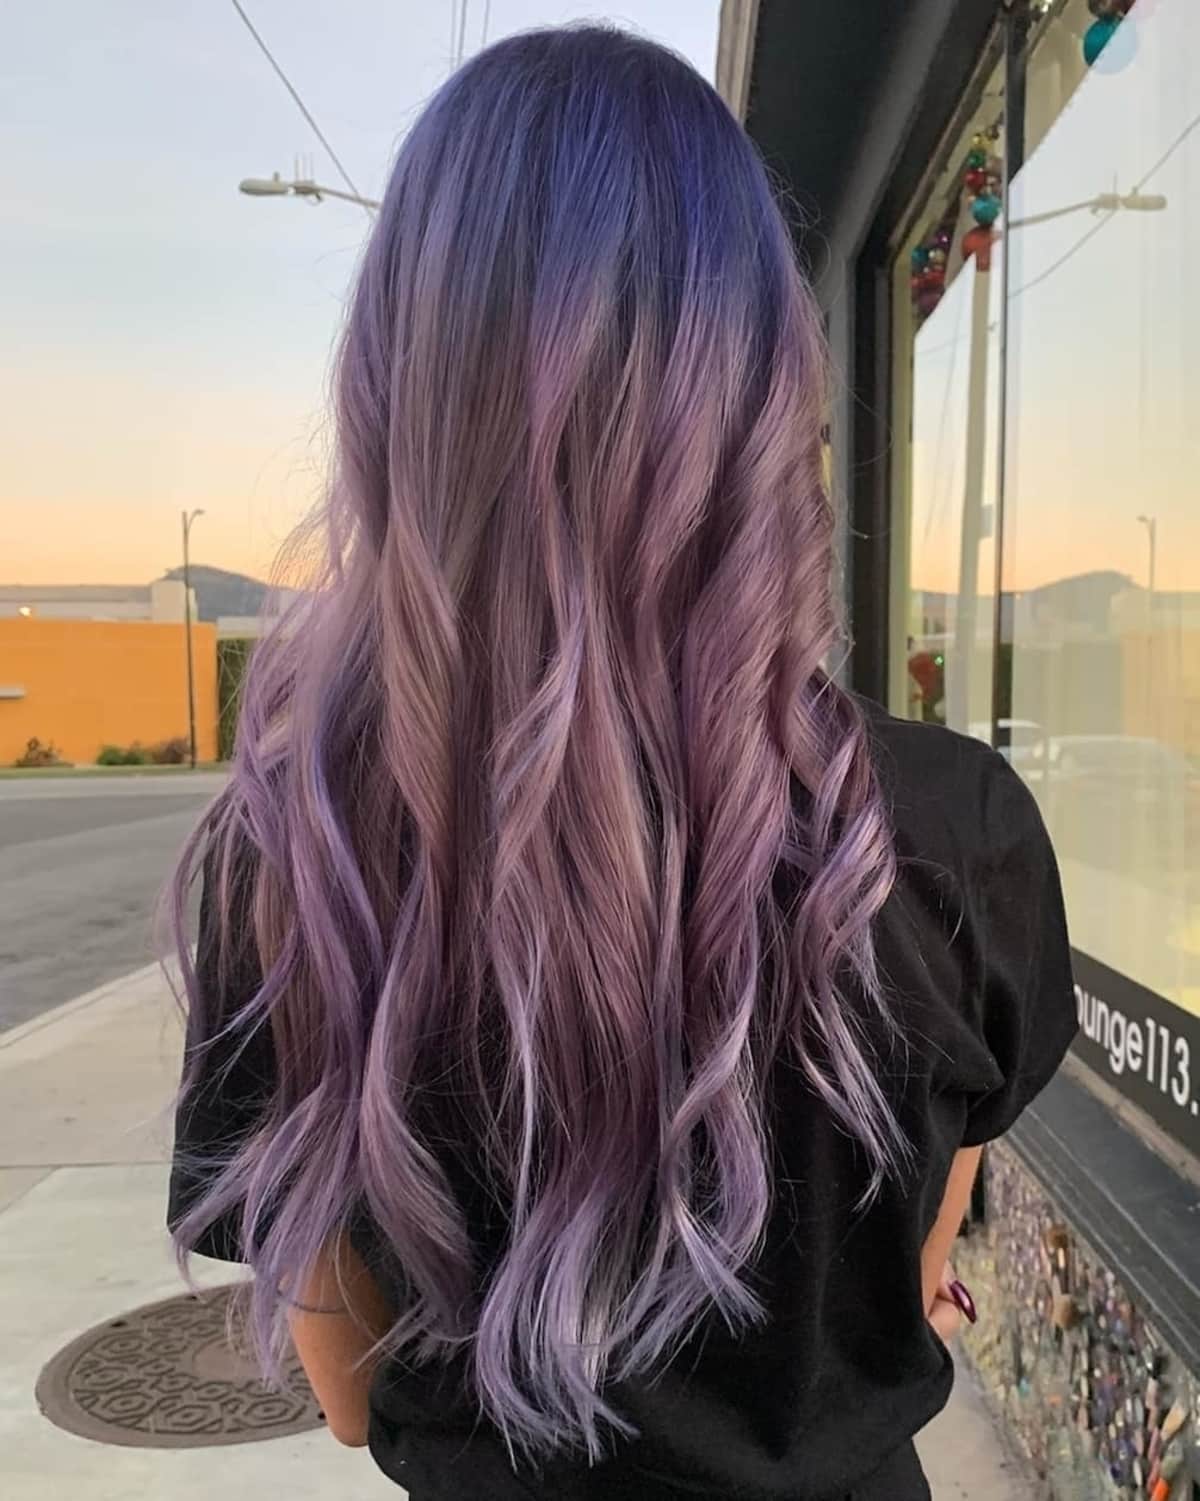 Dusty purple